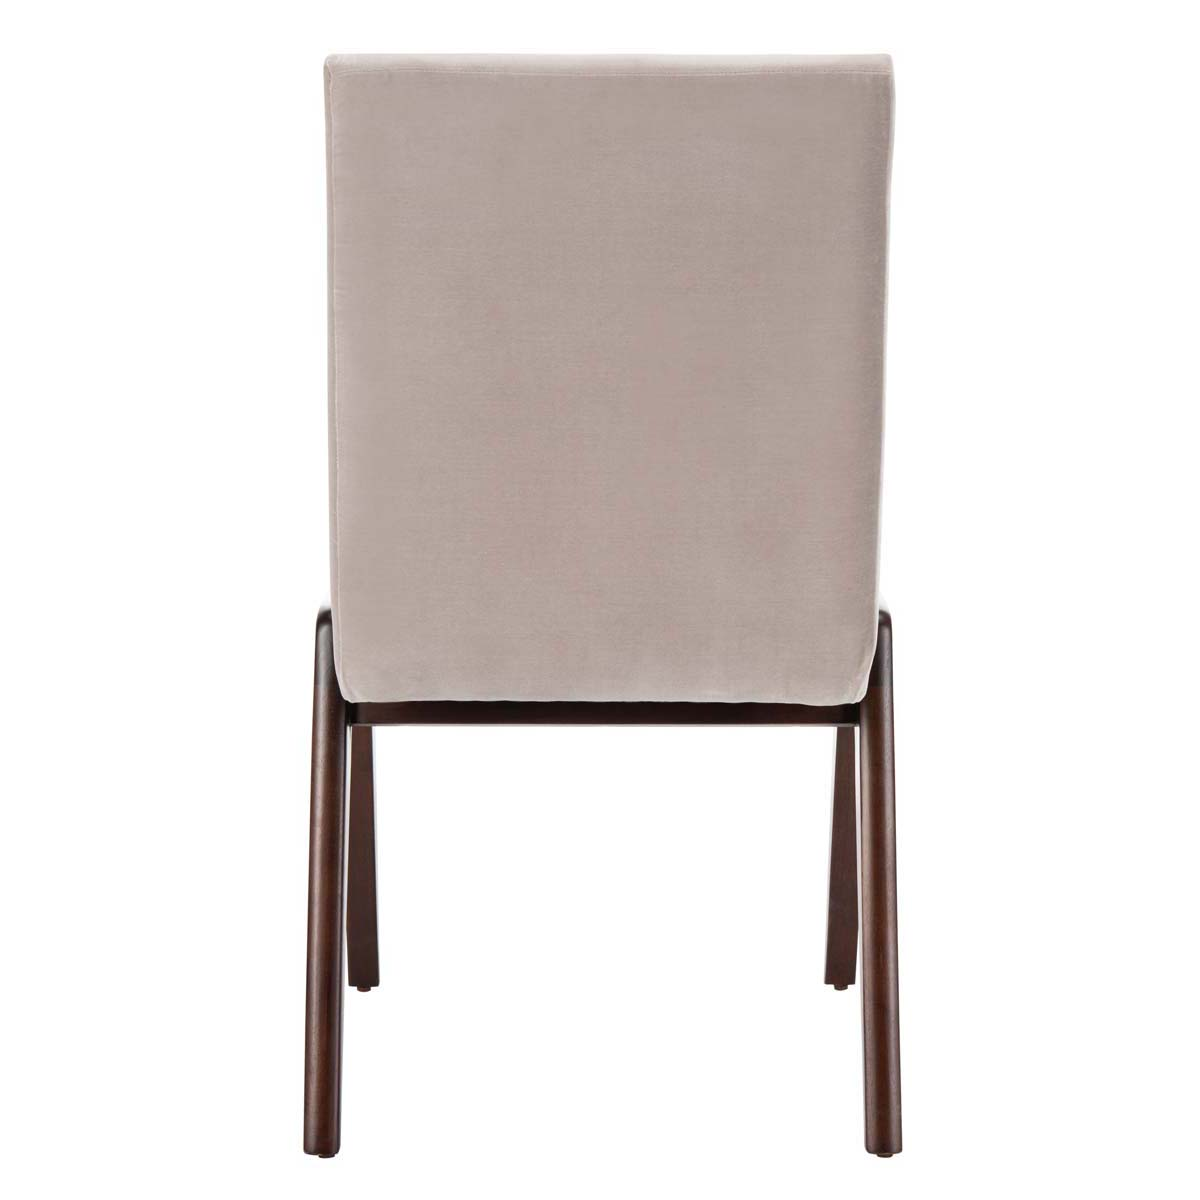 Safavieh Couture Forrest Dining Chair - Light Gray / Dark Walnut